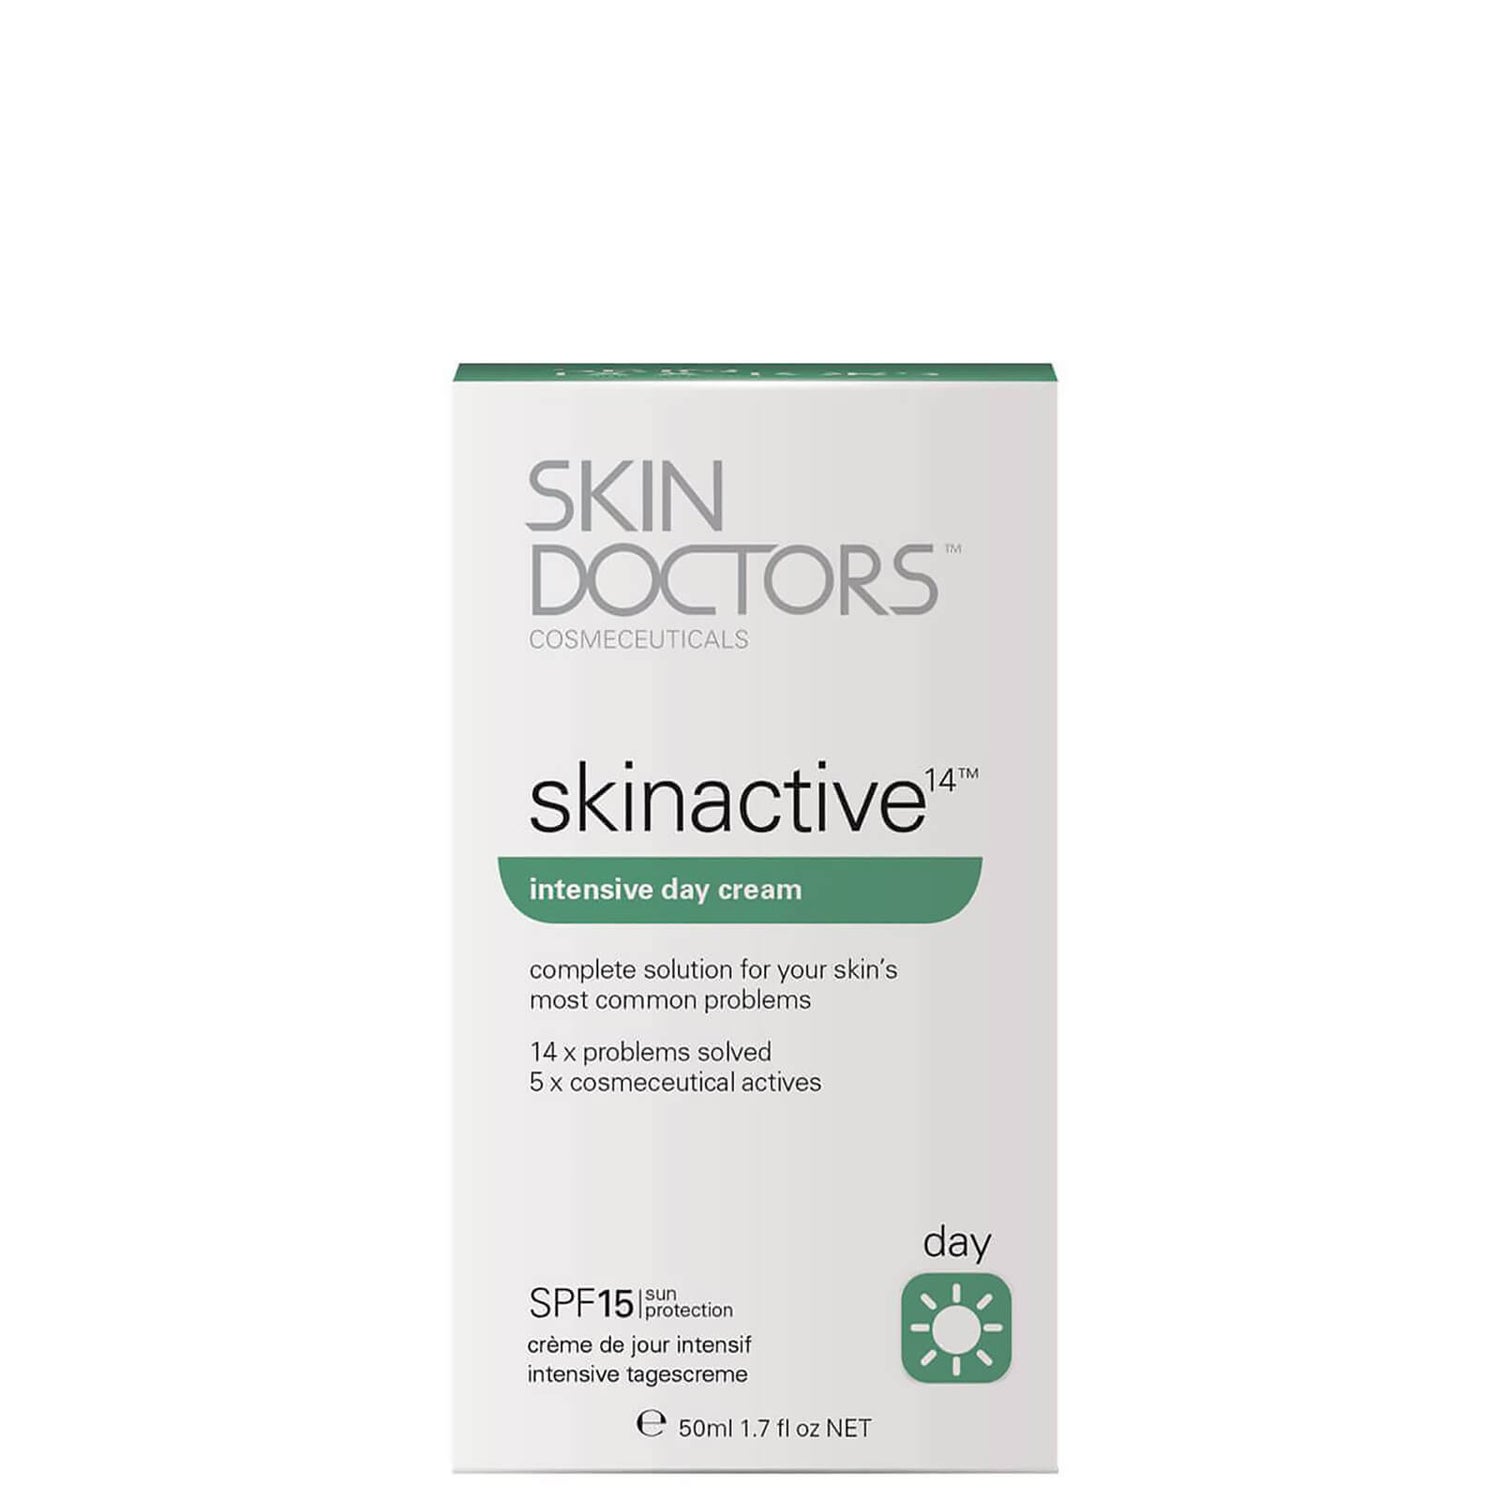 Skin Doctors Skinactive 14 密集护理日霜 50ml